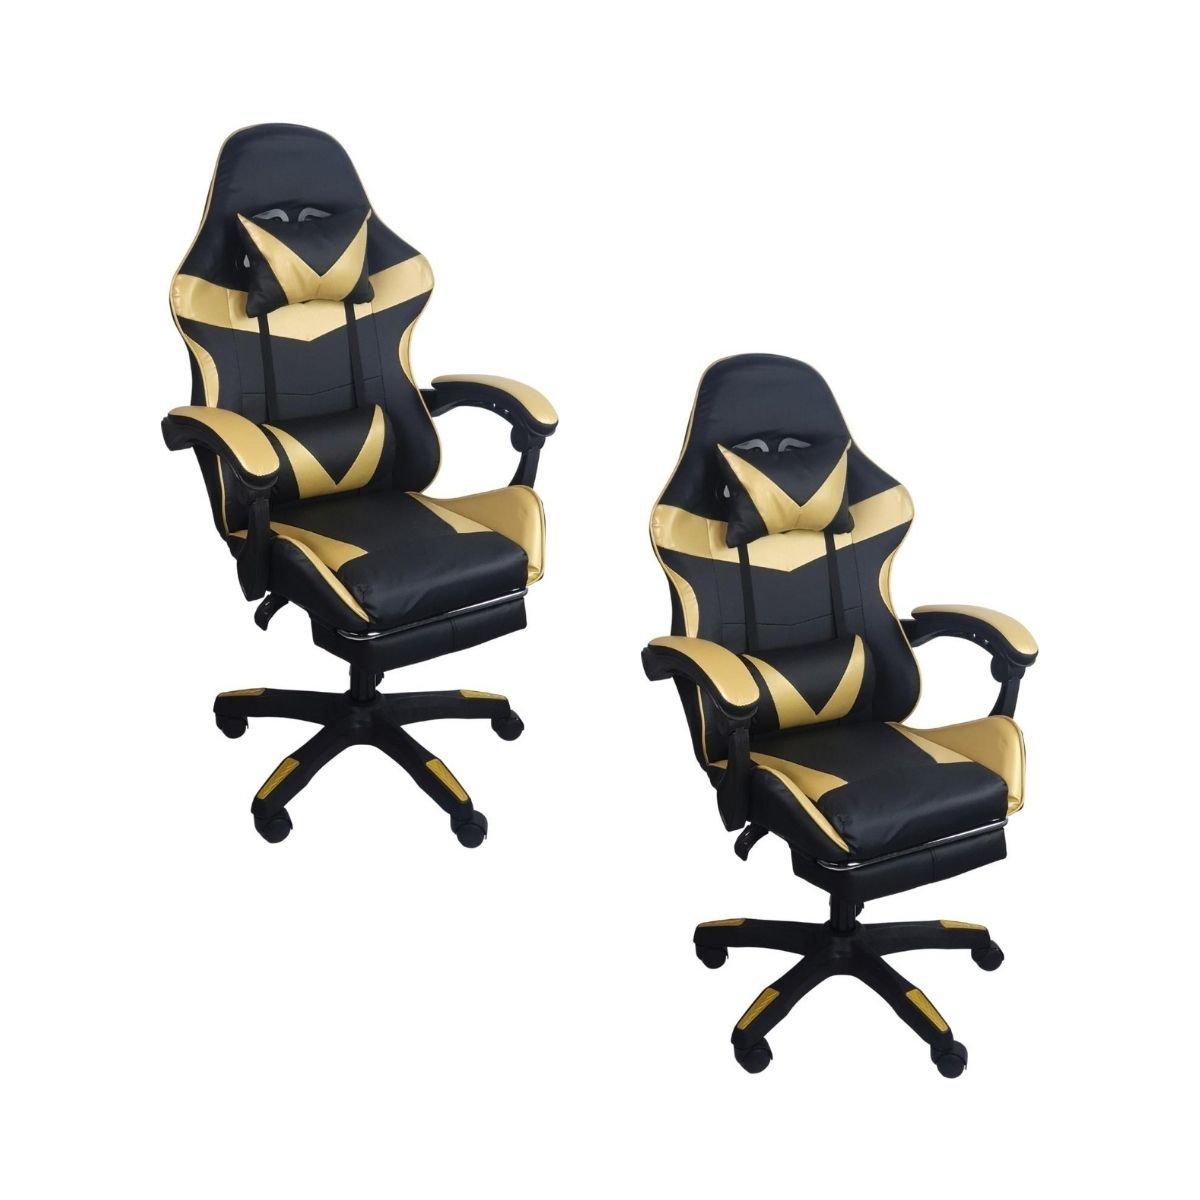 Kit 2 Cadeiras Gamer Stillus Ergonômica com Apoio para Os Pés - Dourada